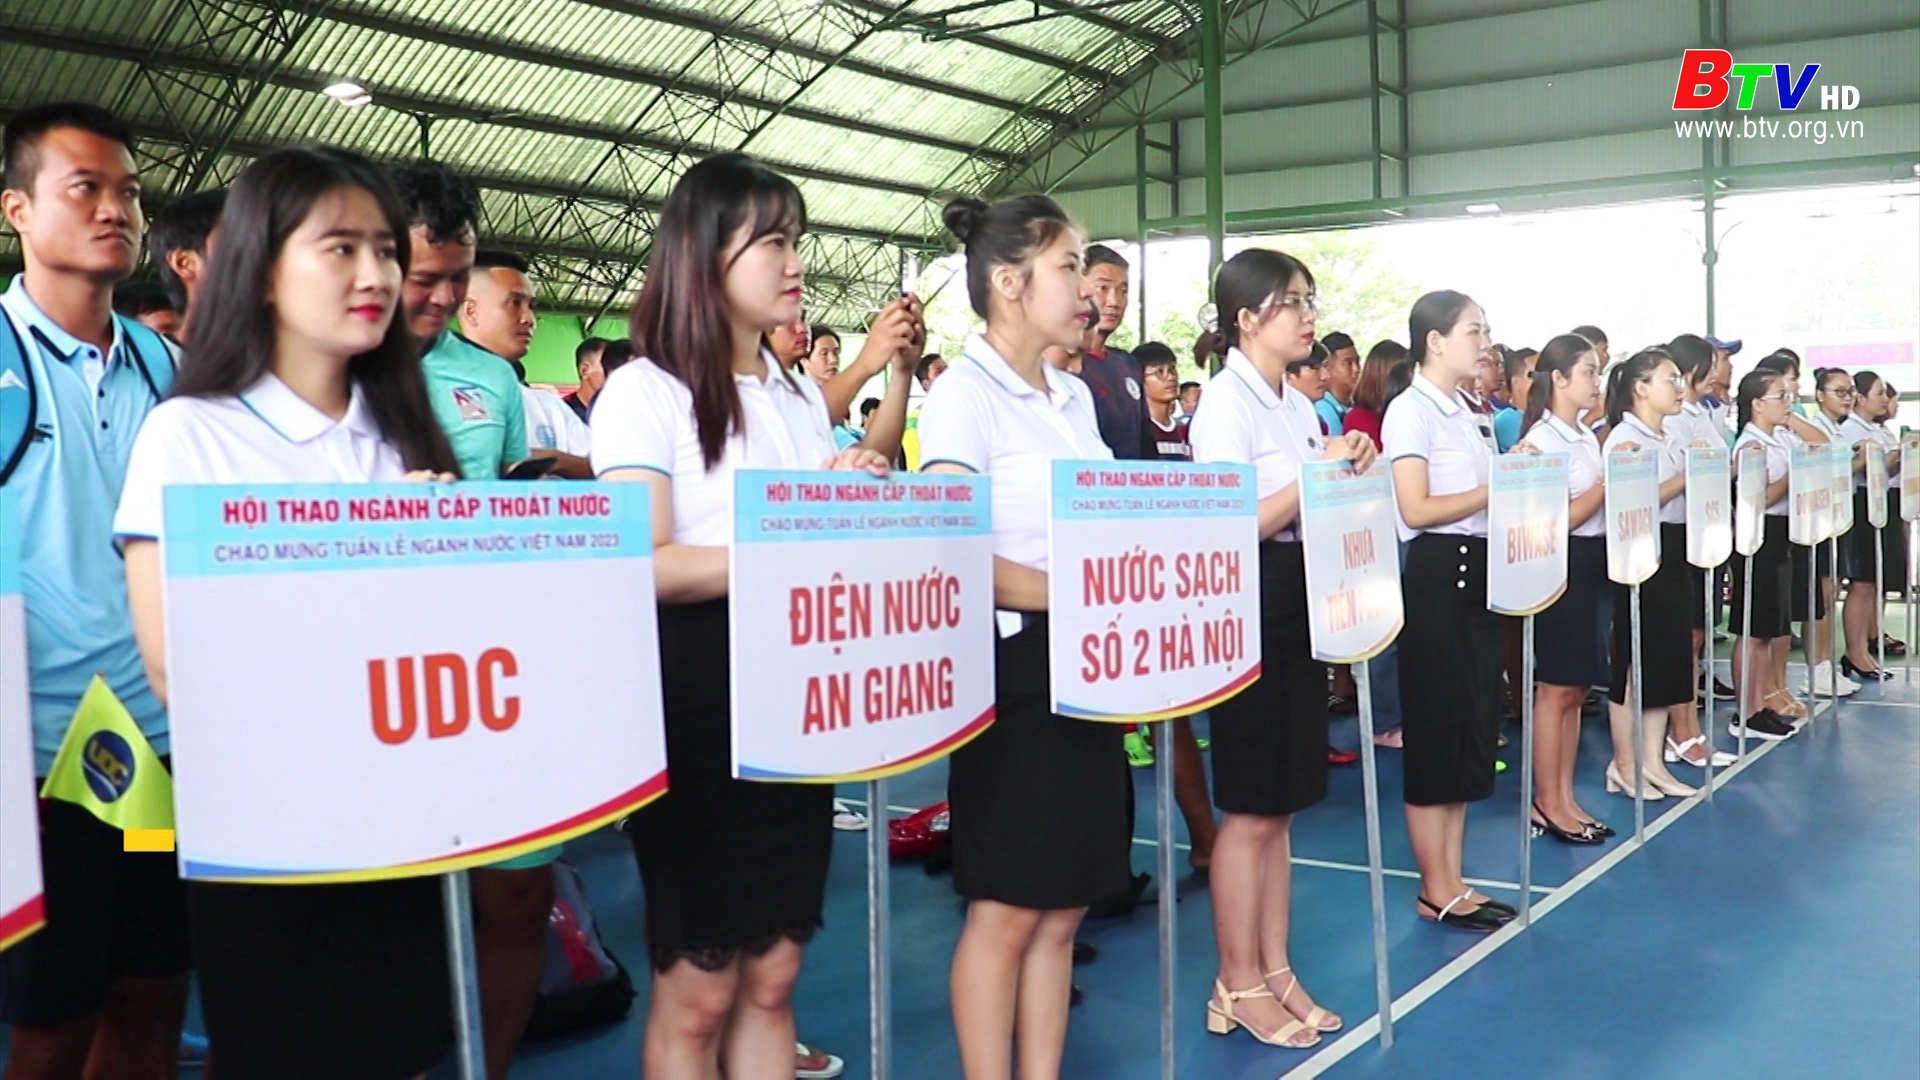 Khai mạc tuần lễ ngành nước Việt Nam năm 2023, giải bóng đá hội thao Biwase năm 2023